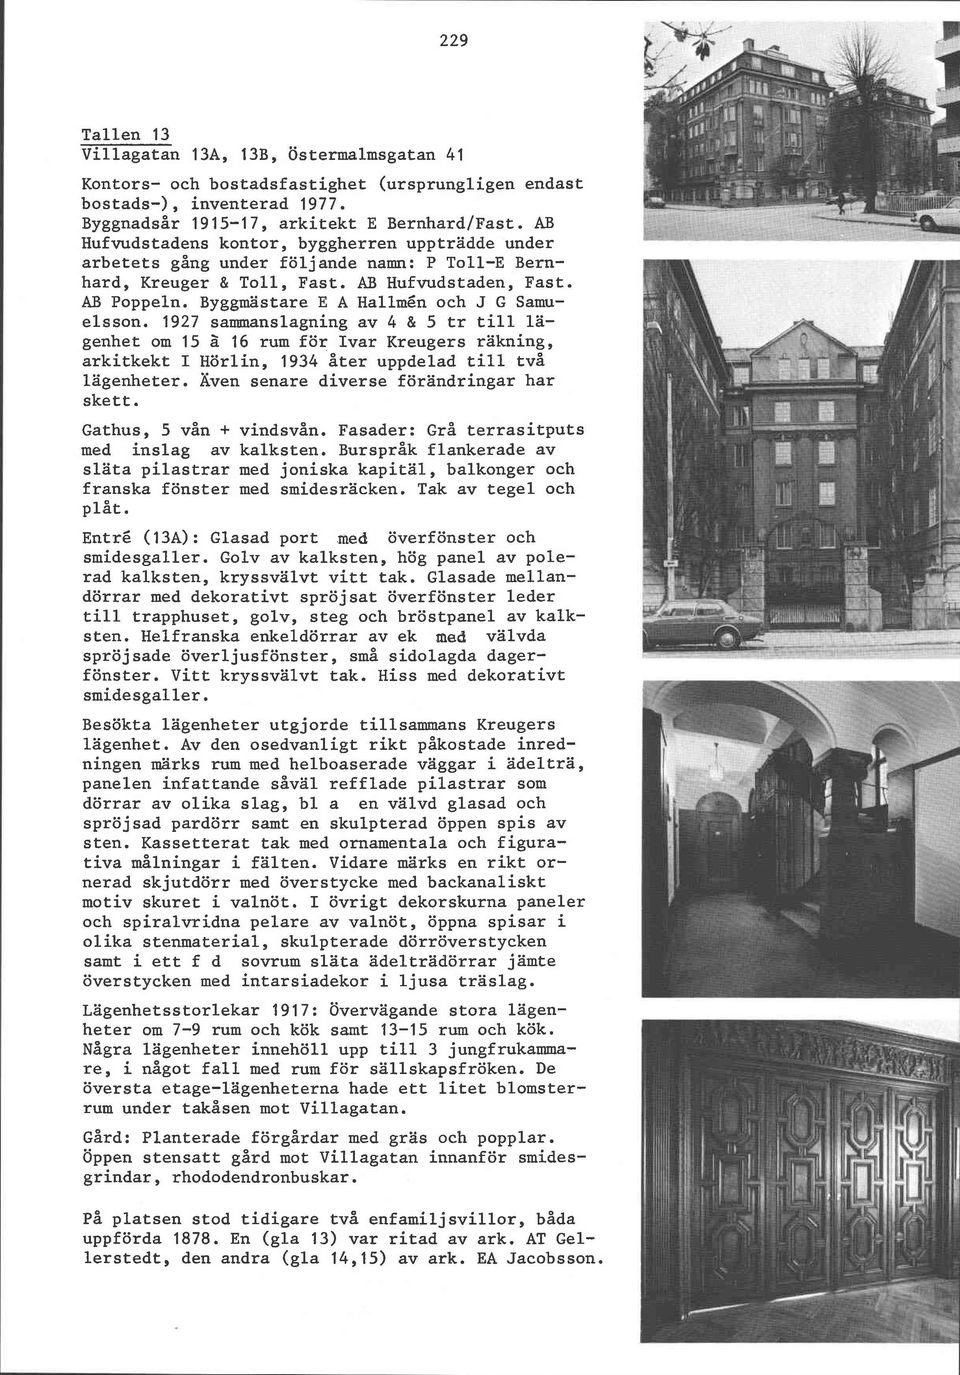 Byggmästare E A Hallmén och J G Samuelsson. 1927 sammanslagning av 4 & 5 tr till lägenhet om 15 2 16 rum för Ivar Kreugers räkning, arkitkekt I Hörlin, 1934 åter uppdelad till två lägenheter.